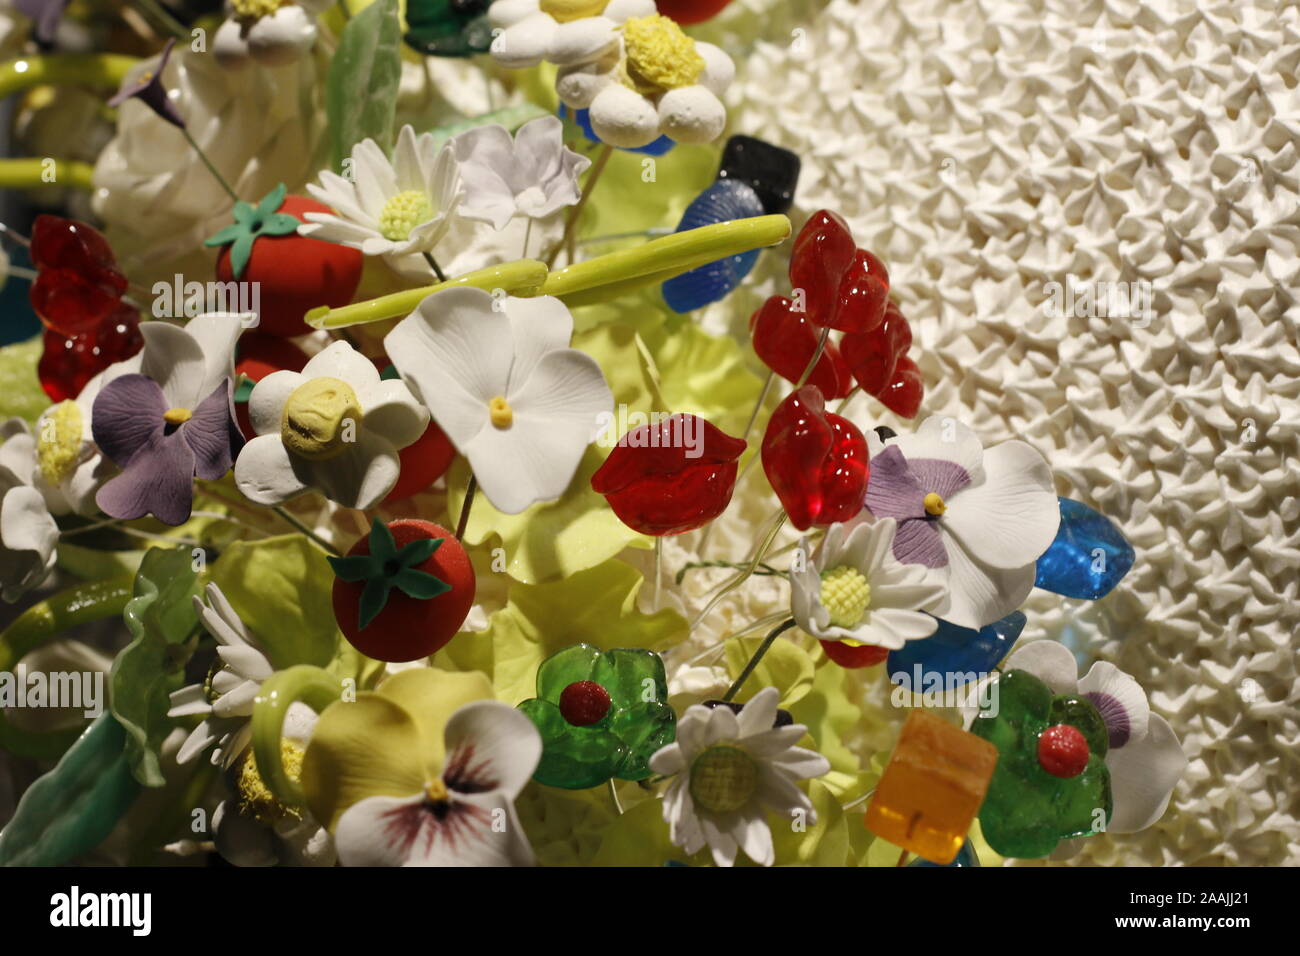 Das Bild zeigt eine vielfältige Auswahl an bunten Mann Tischdekorationen in Form von Blüten und Perlen auf weißem Gitter Stockfoto